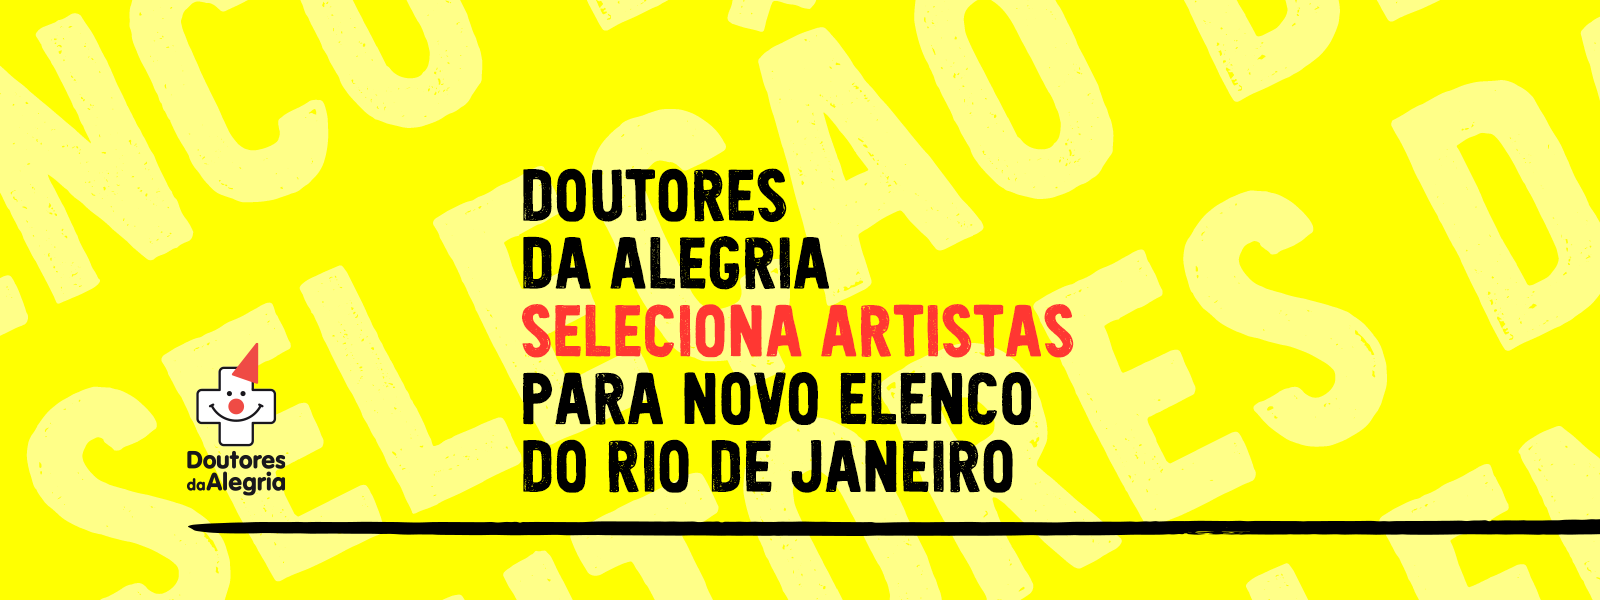 Doutores da Alegria seleciona artistas para novo elenco do Rio de Janeiro